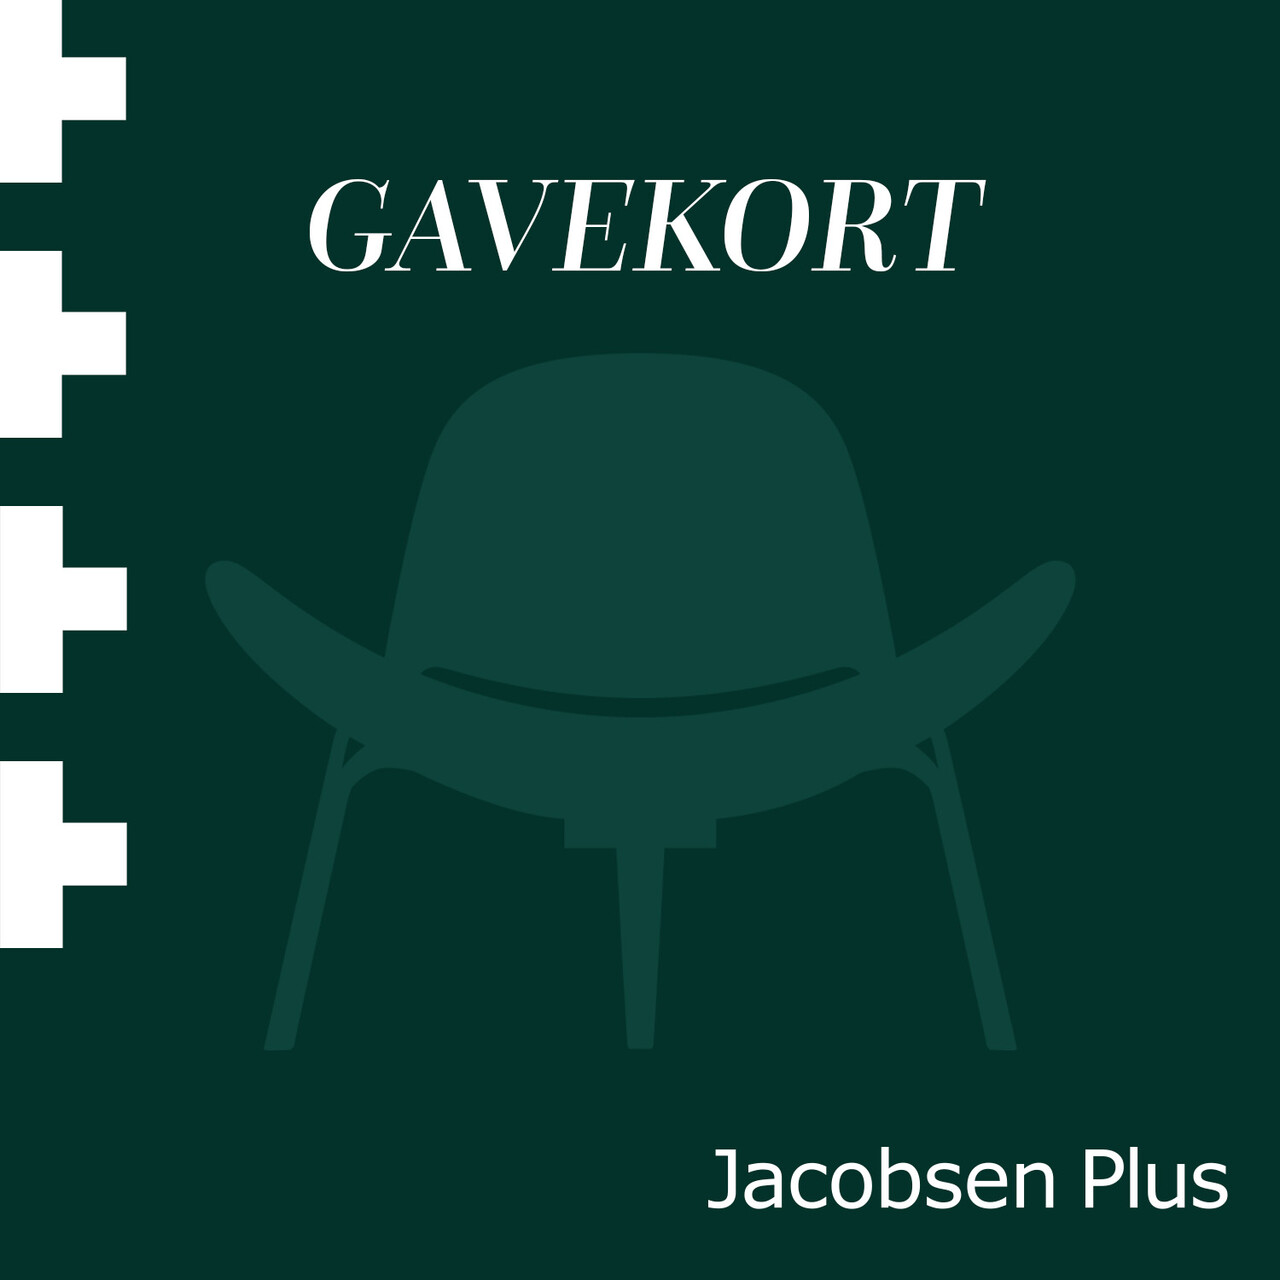 Elektronisk gavekort til Jacobsen Plus (800)